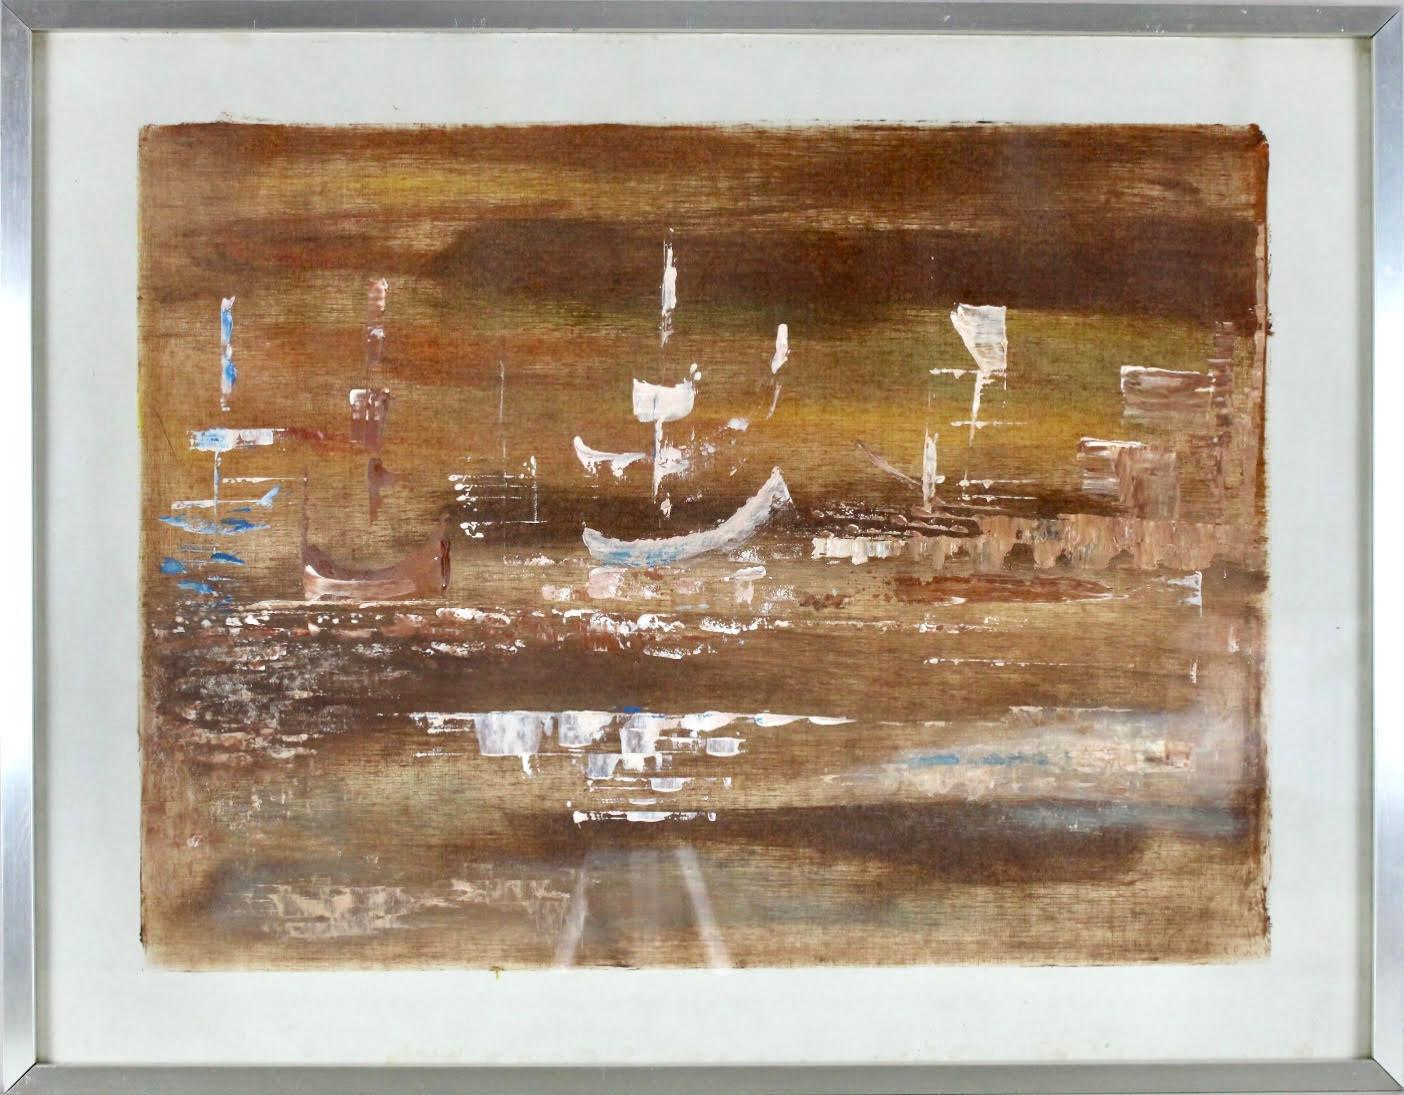 Cette huile sur papier de Federico Castellón présente les caractéristiques de son style artistique, mêlant des éléments de surréalisme à un réalisme saisissant, mais subtil. La composition rappelle un paysage de rêve, avec des formes abstraites qui